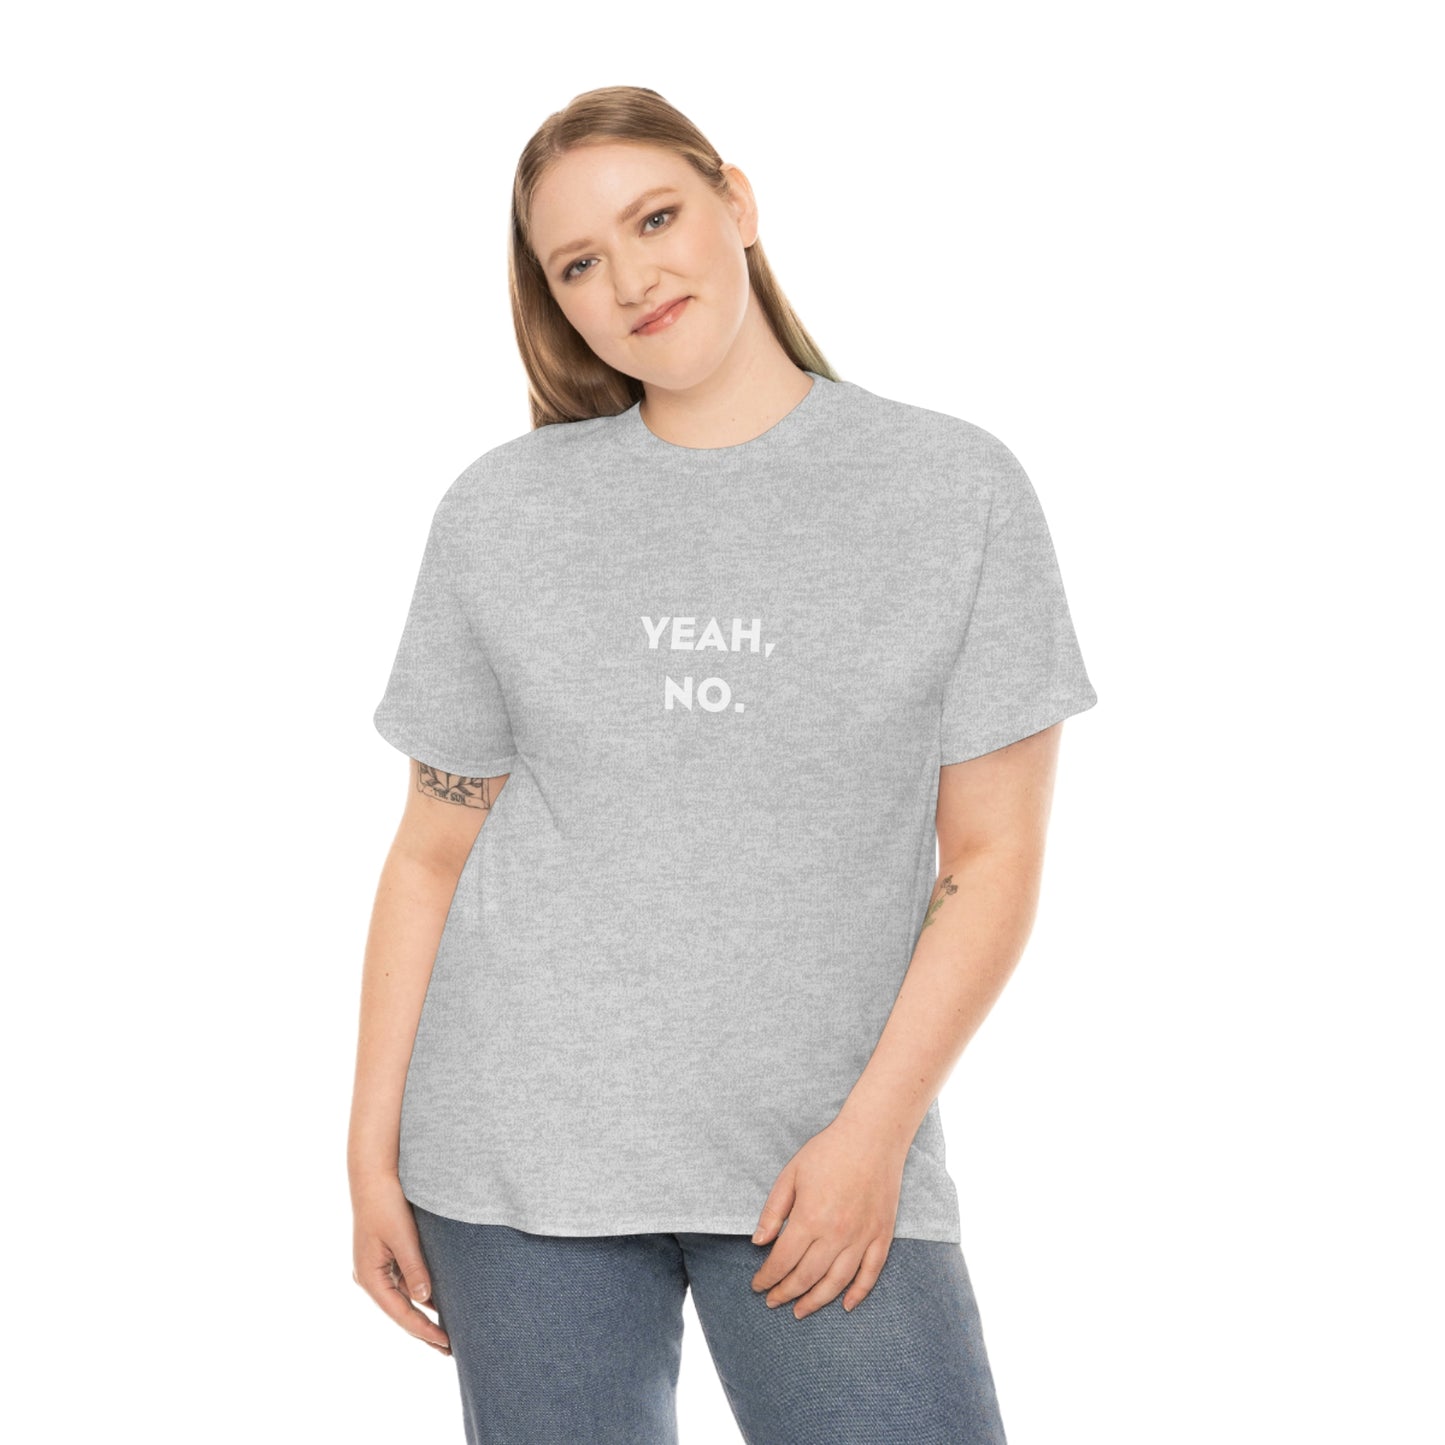 Ouais non! T-shirt en coton lourd drôle ironique. Haut étudiant